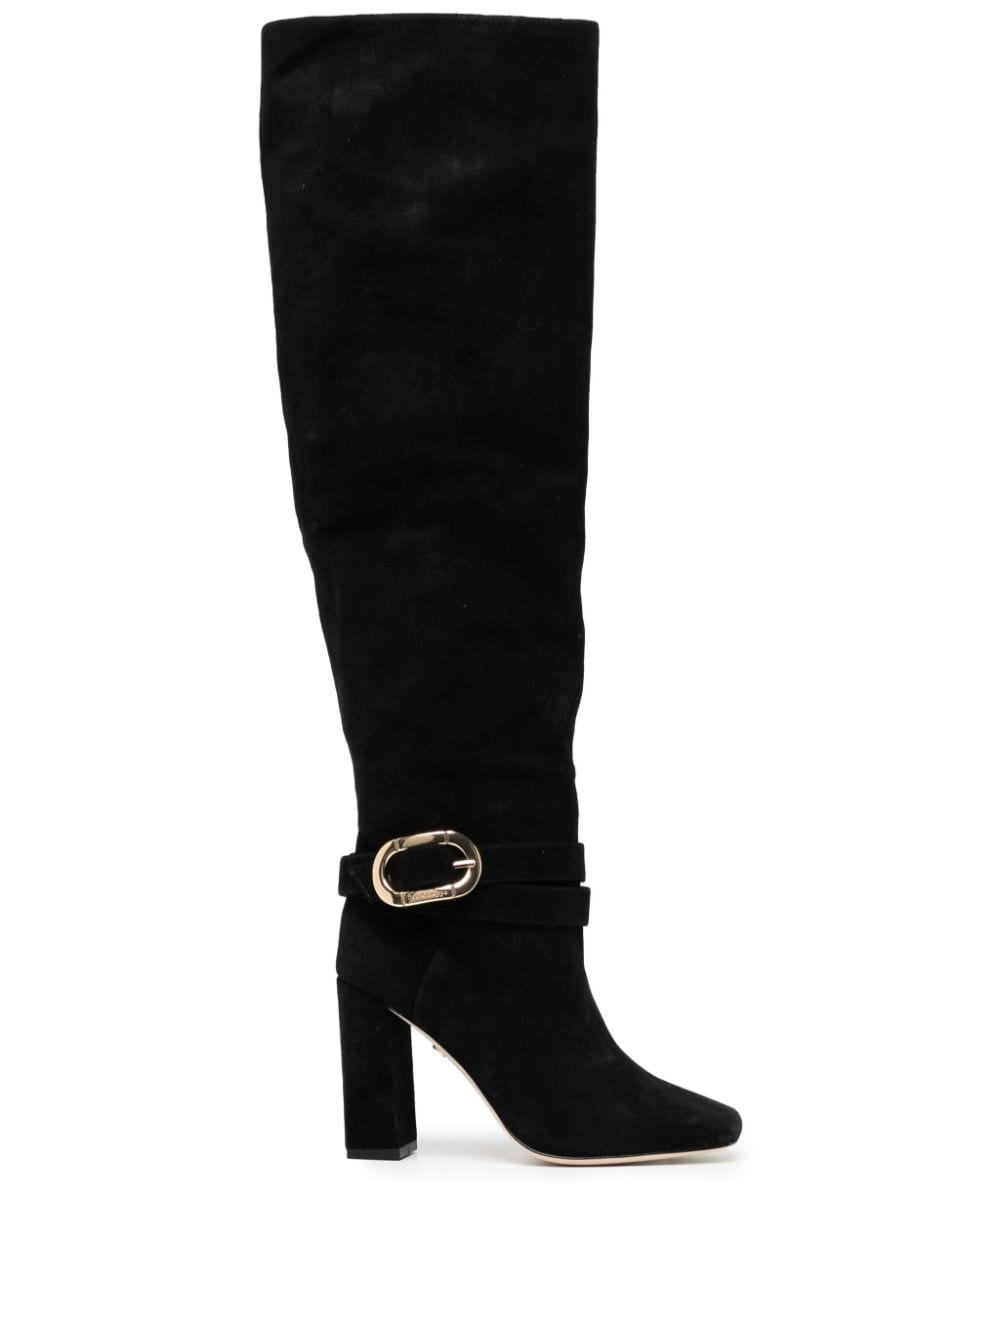 Dee Ocleppo Samantha 95mm knee-high suede boots - Black von Dee Ocleppo